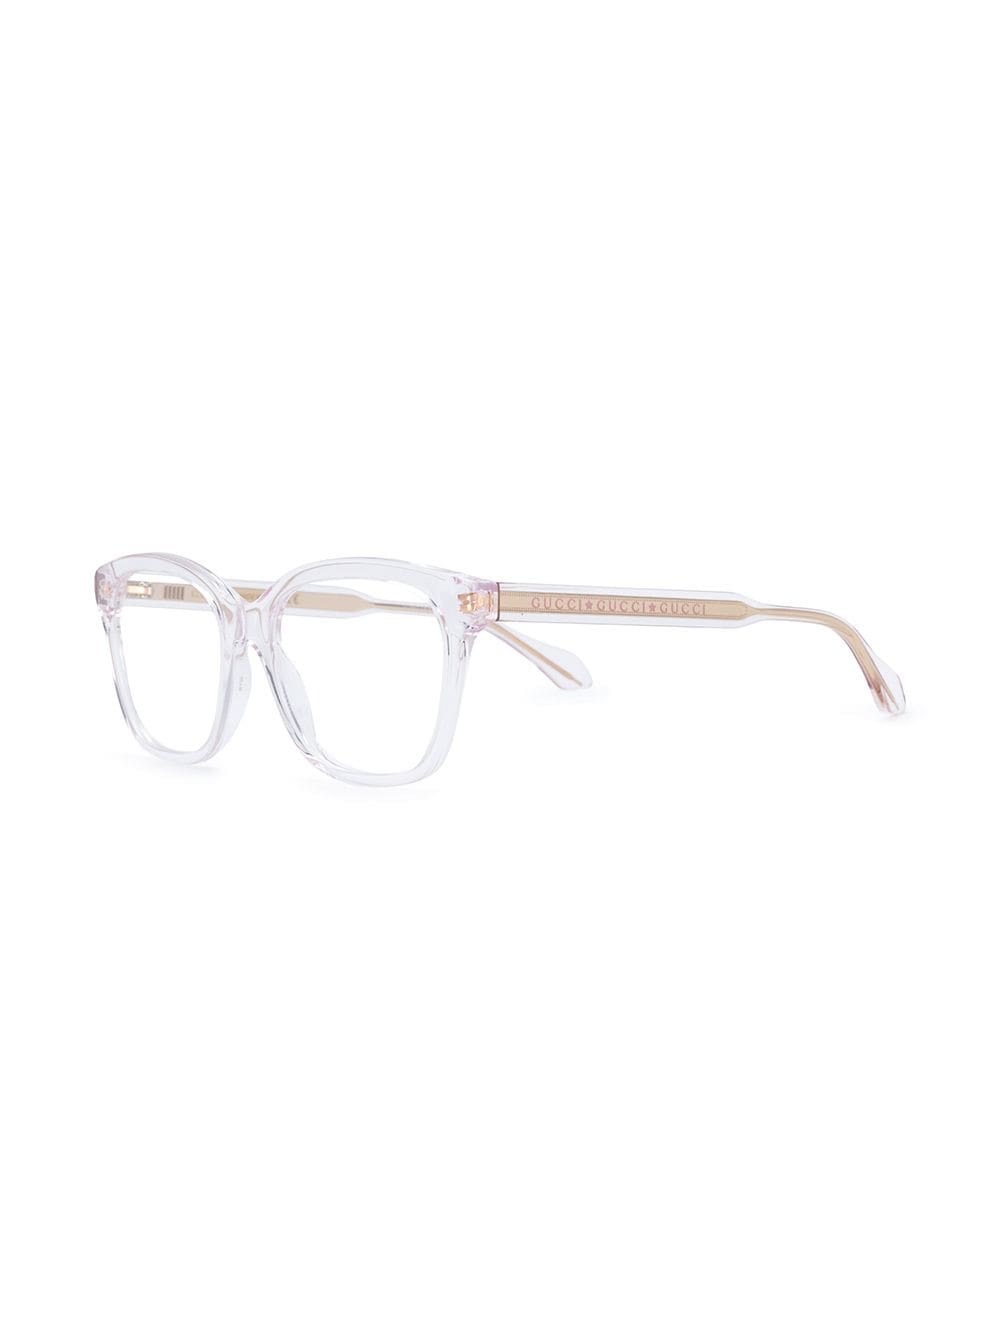 Shop Gucci Eyewear clear frame glasses 